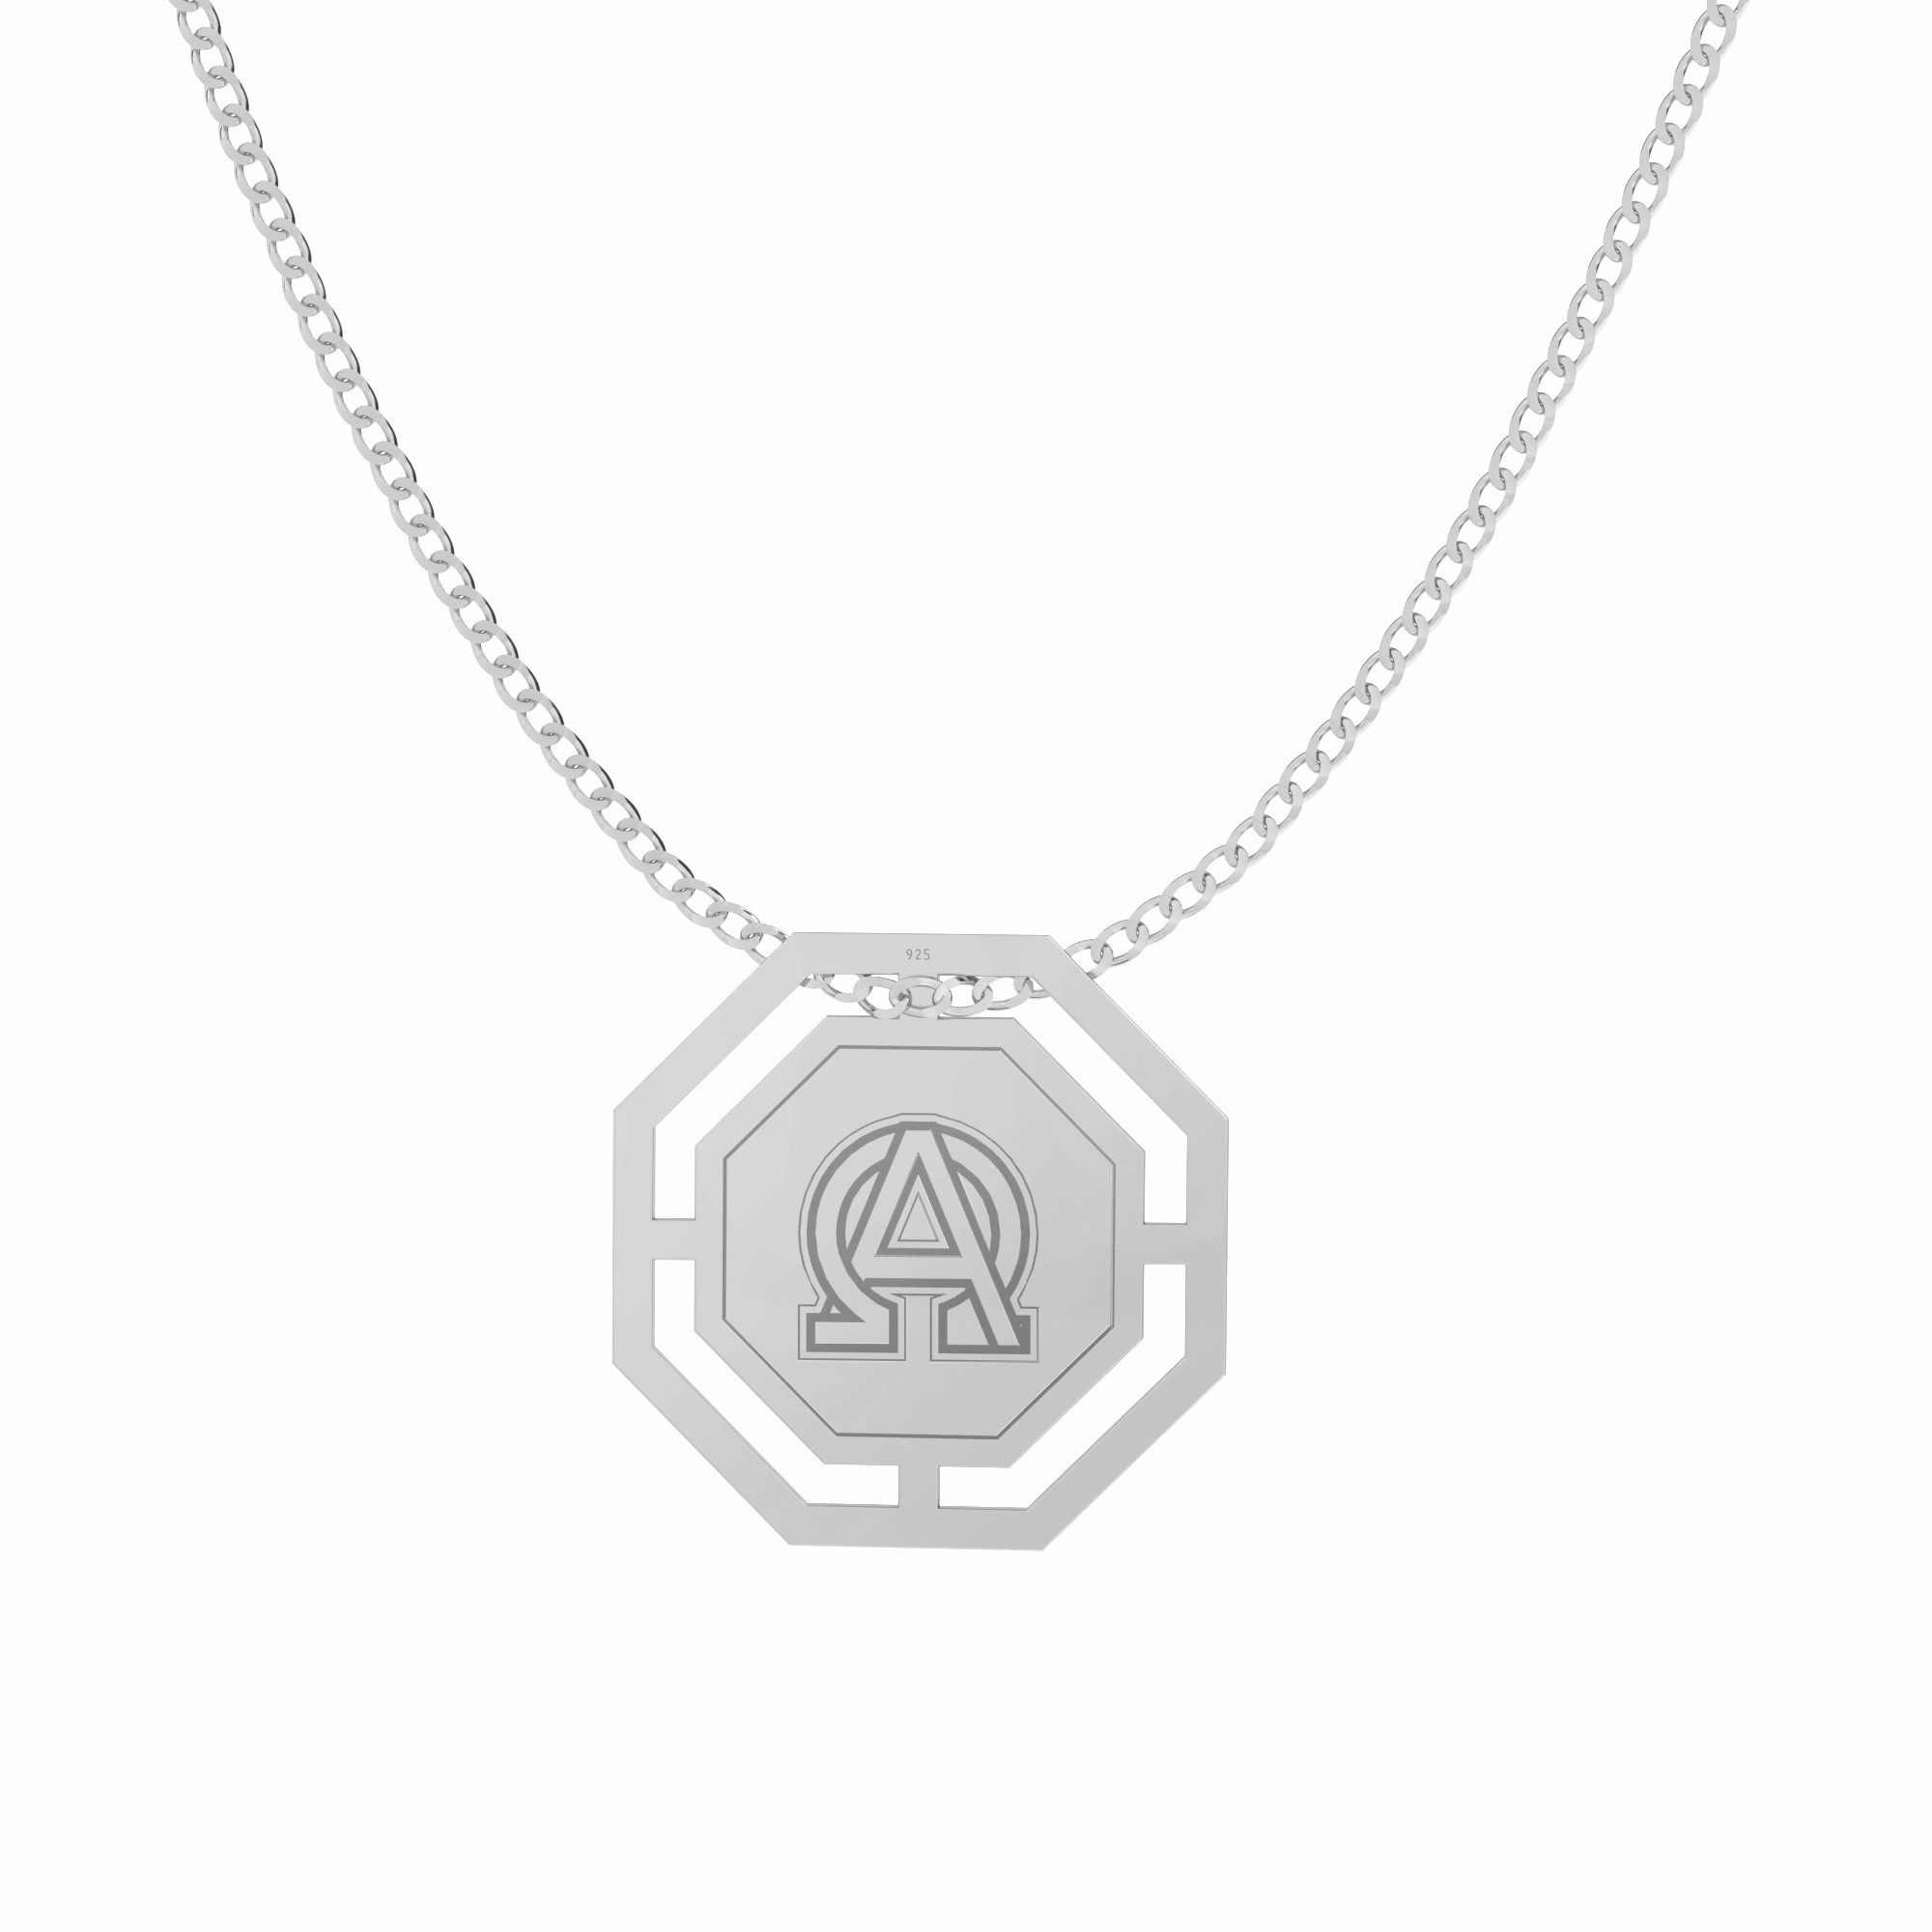 Naszyjnik medalion alfa i omega, Sky&Soul, srebro 925